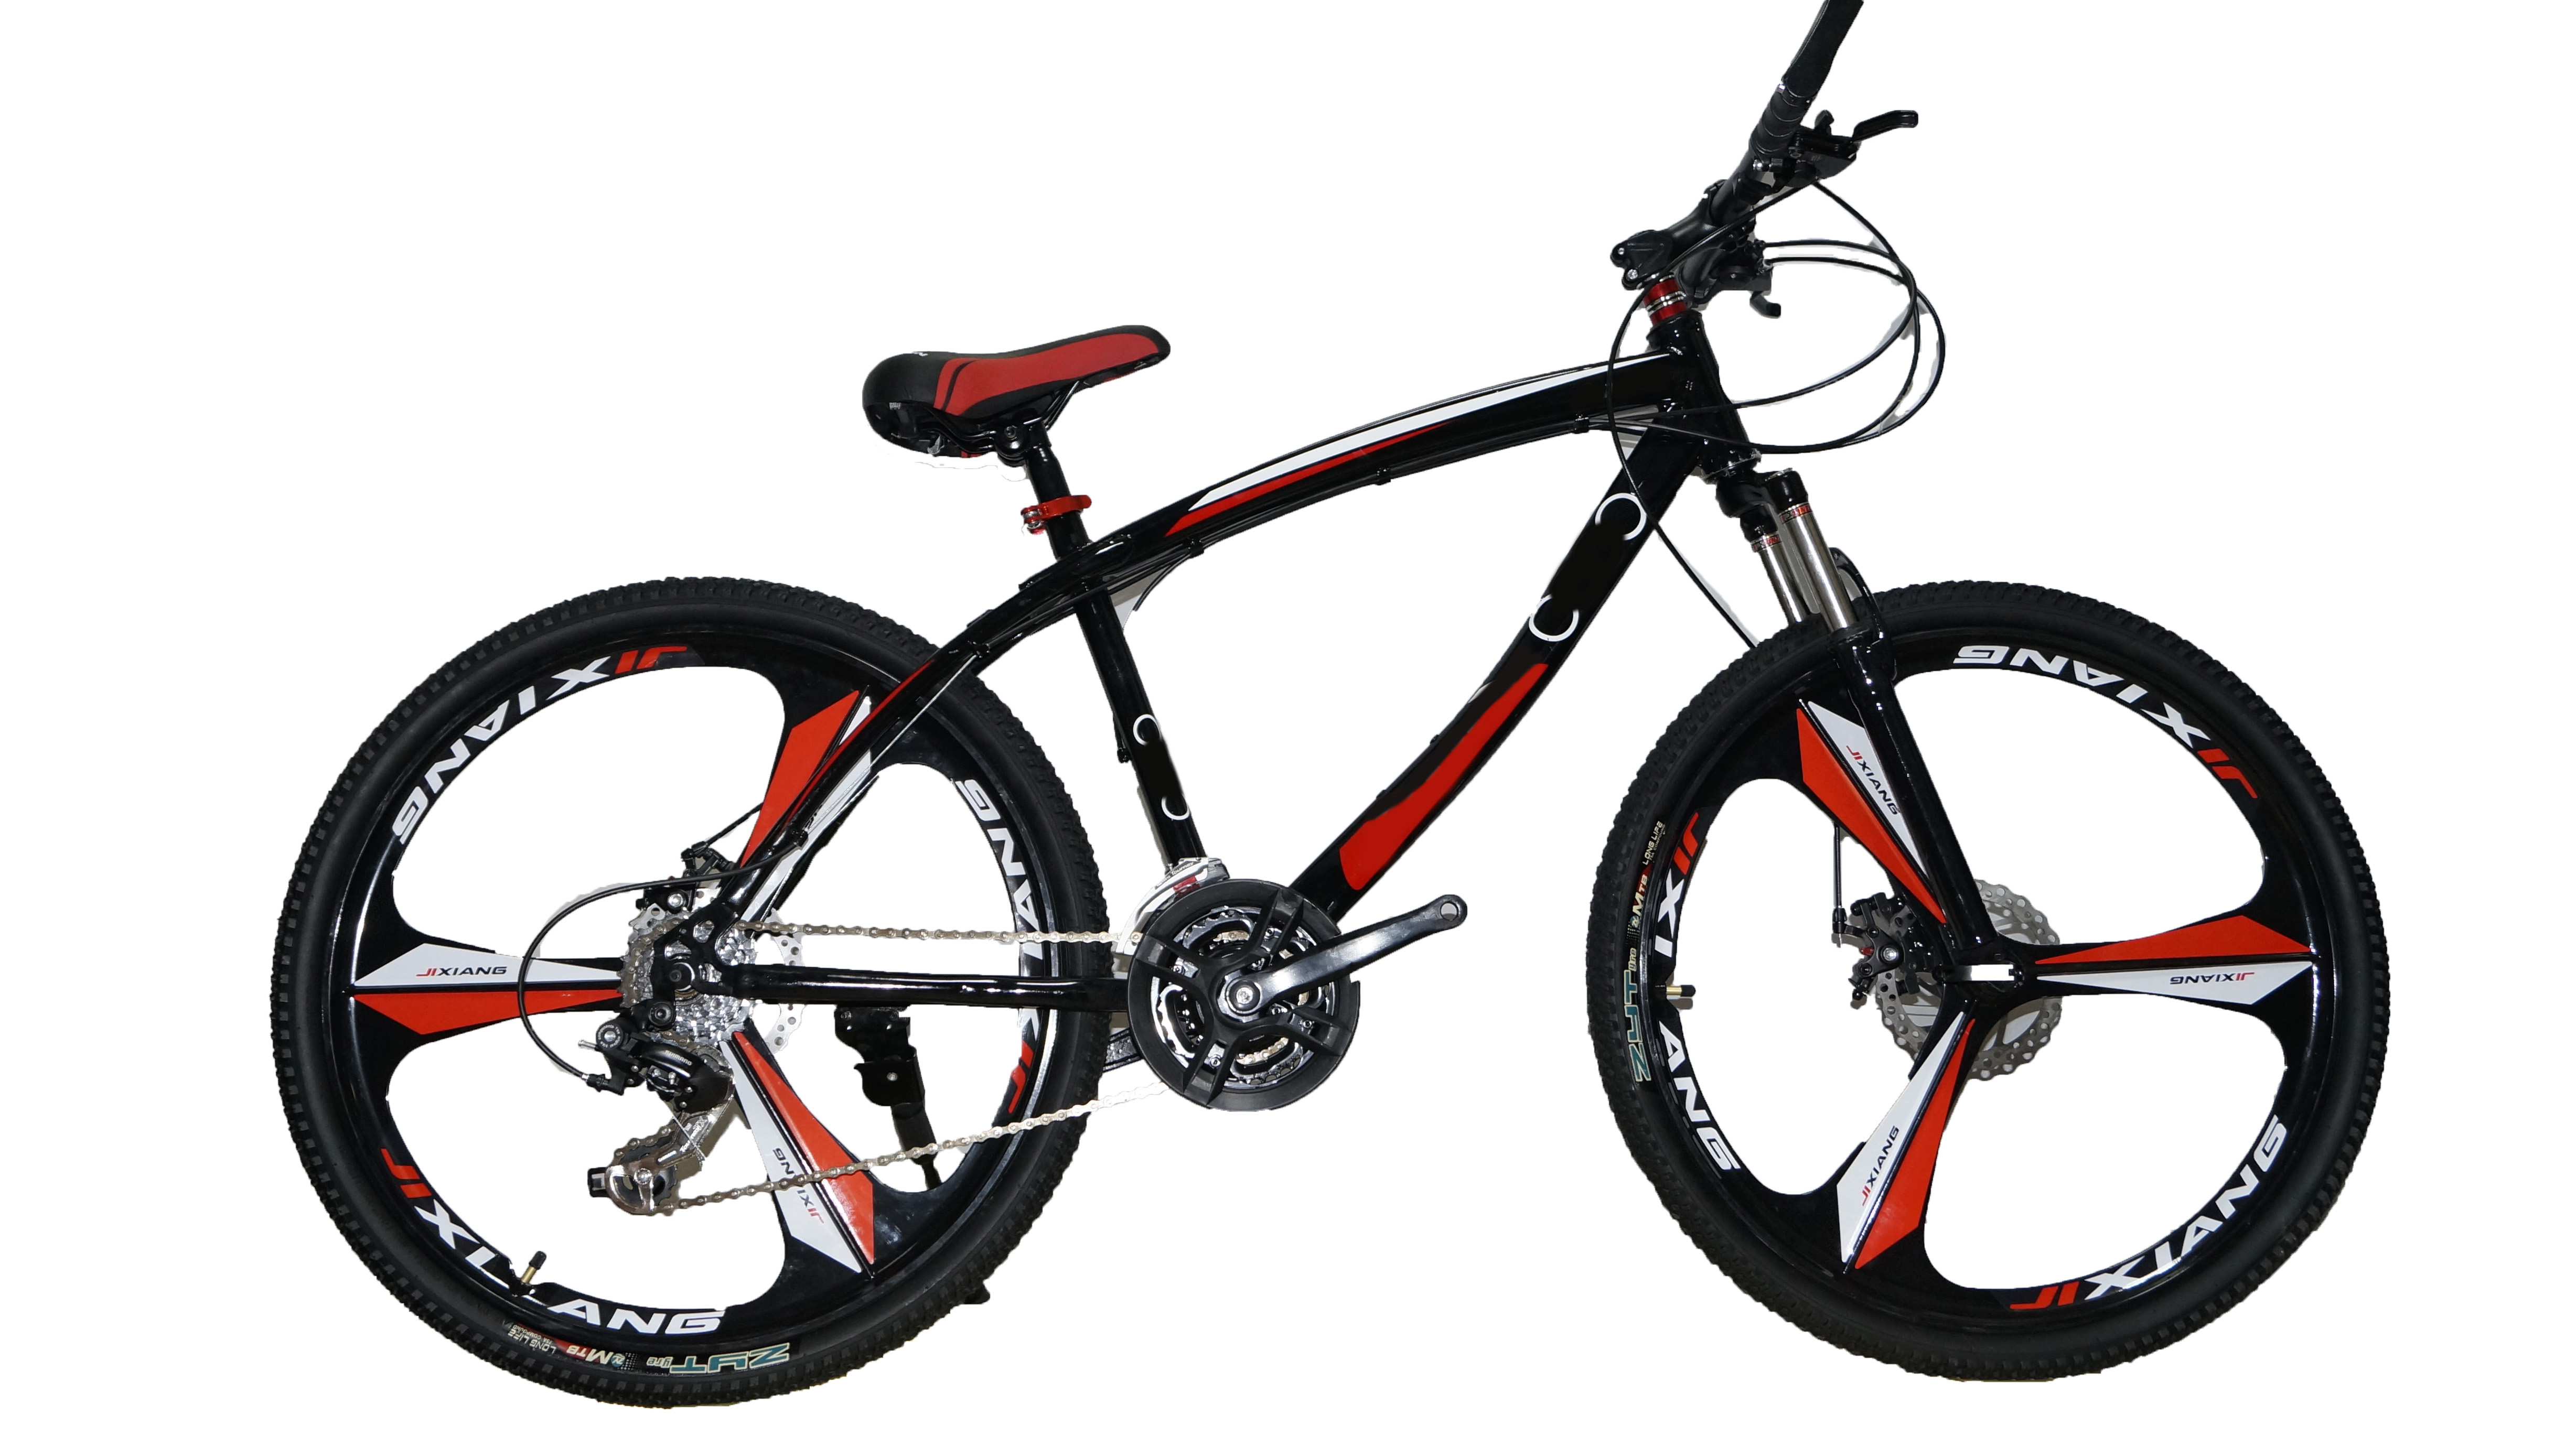 Велосипед частные объявления. Велосипед горный, на 26 колёсах.. Велосипед 24 Raveric 21-скорость (литье черно-красный). Велосипед Динос 26 дюймов складной. Горный велосипед Кано 26.